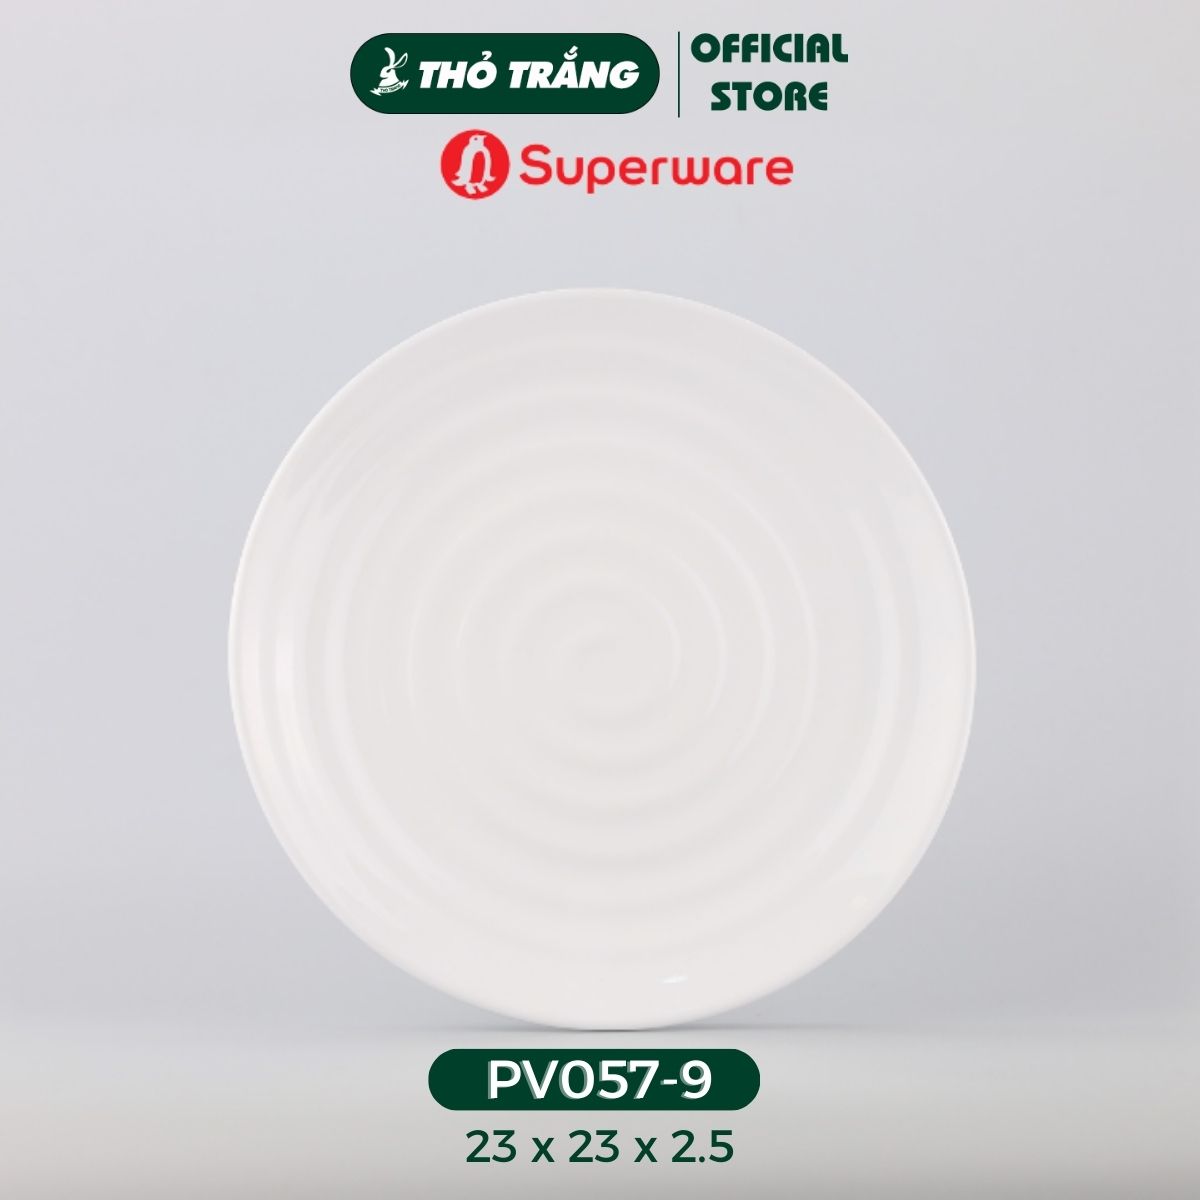 Dĩa tròn có vân dày nhựa Melamine màu trắng thương hiệu Superware